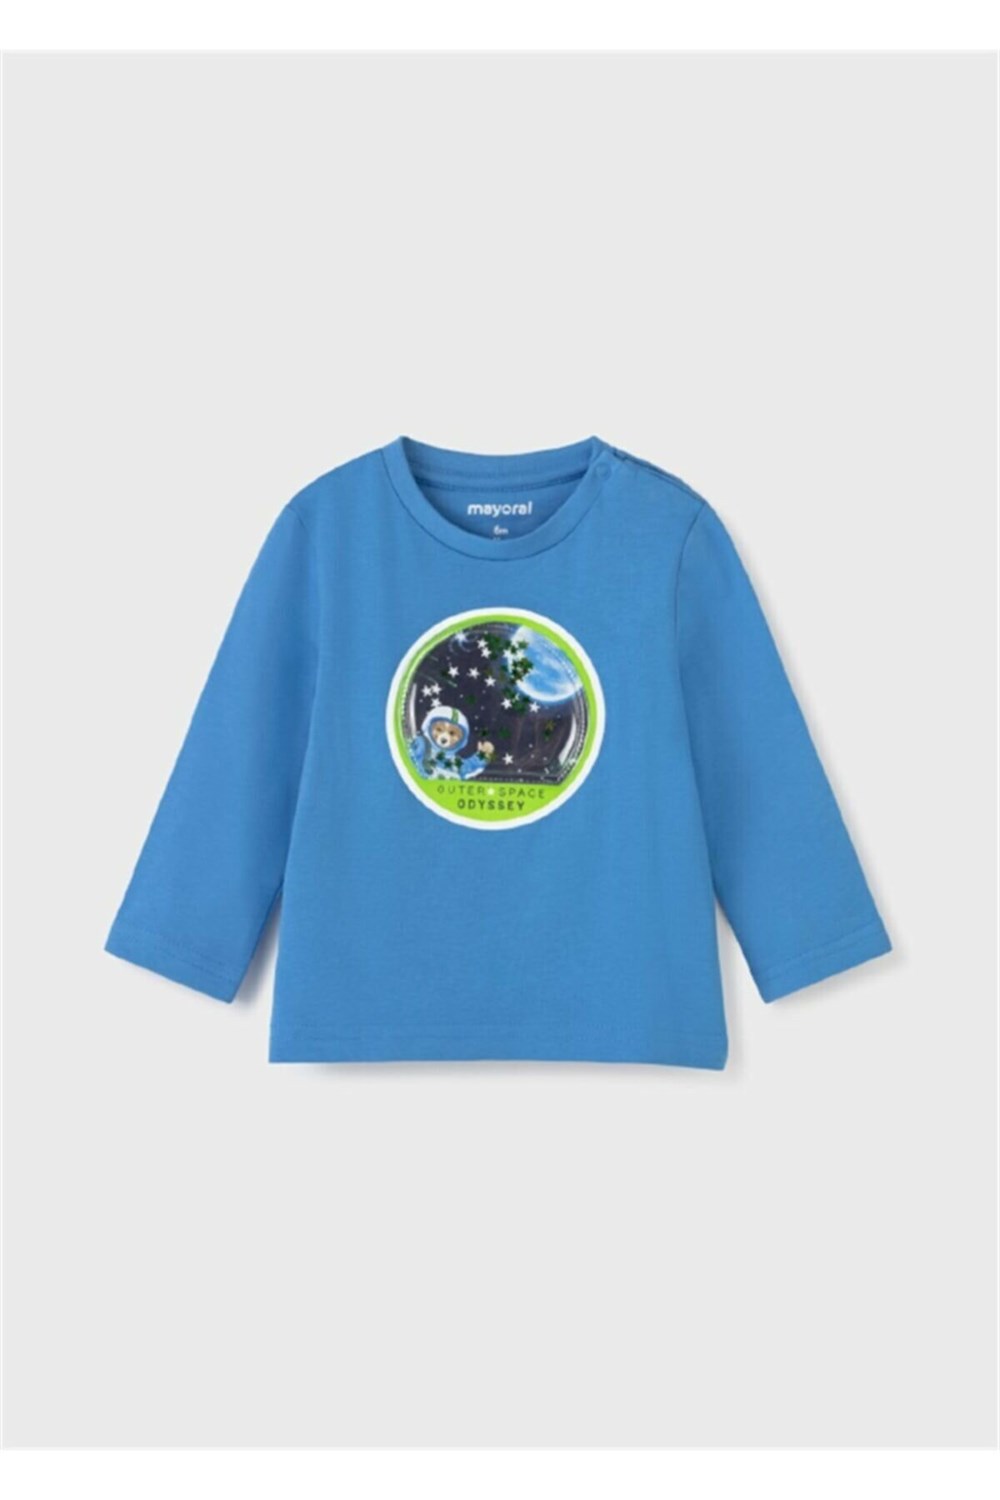 Mayoral Erkek Bebek Uzay T-Shirt